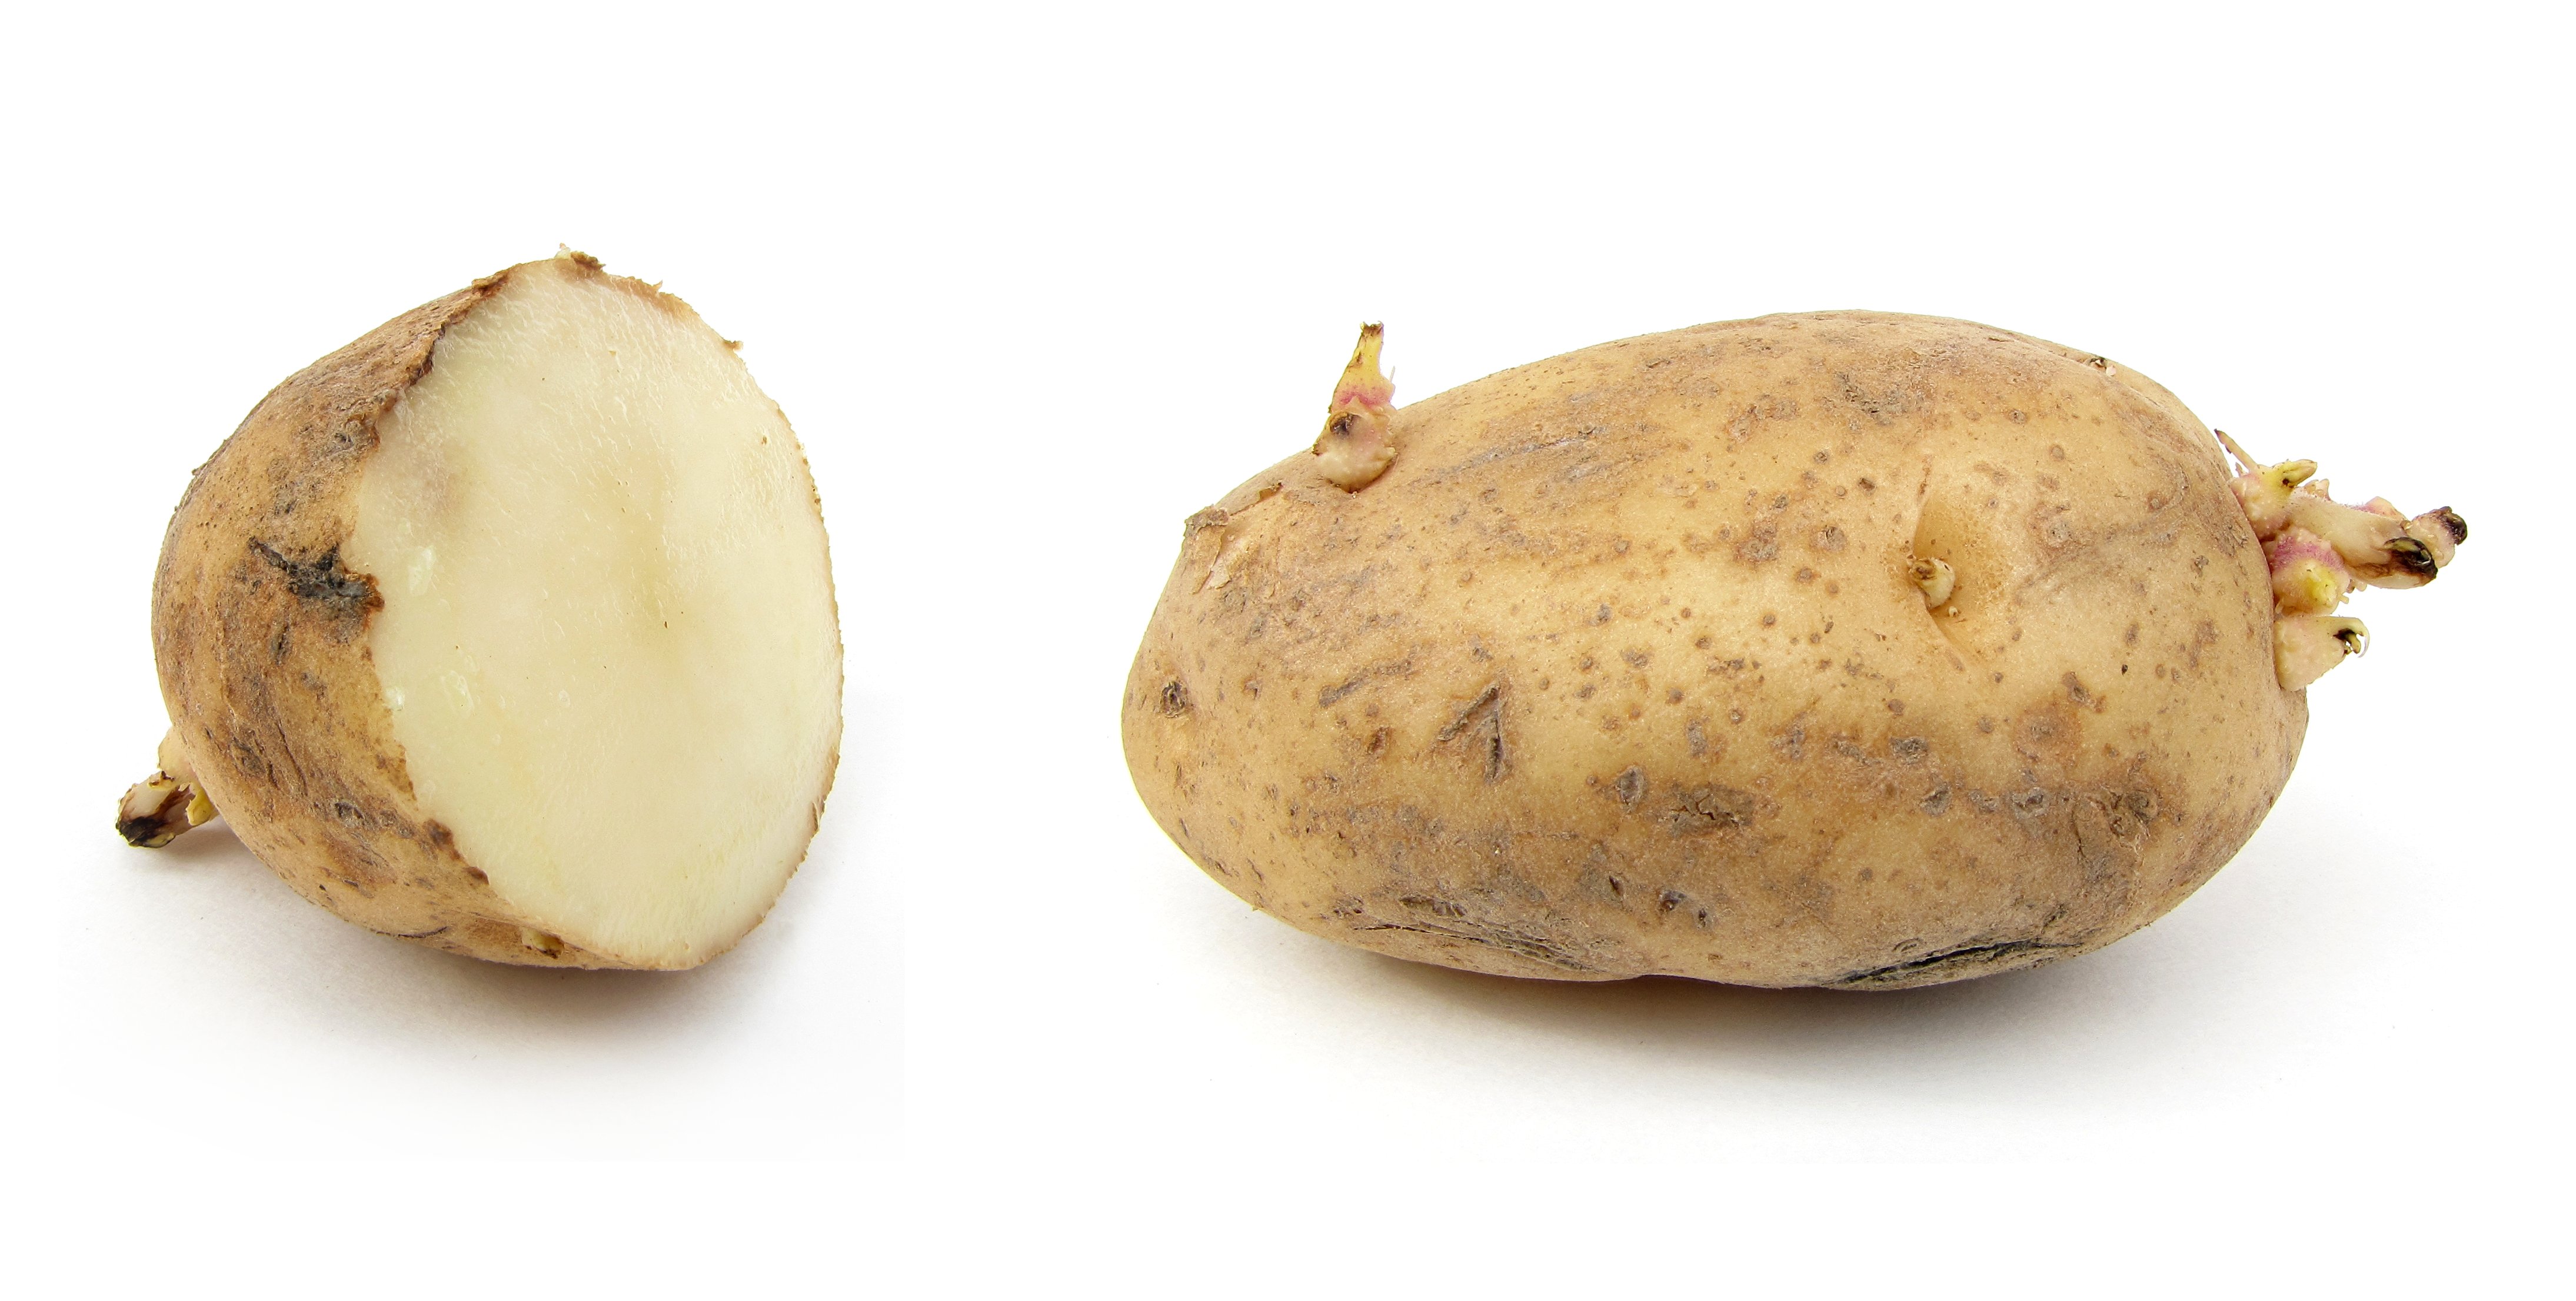 Russet potato - Wikipedia